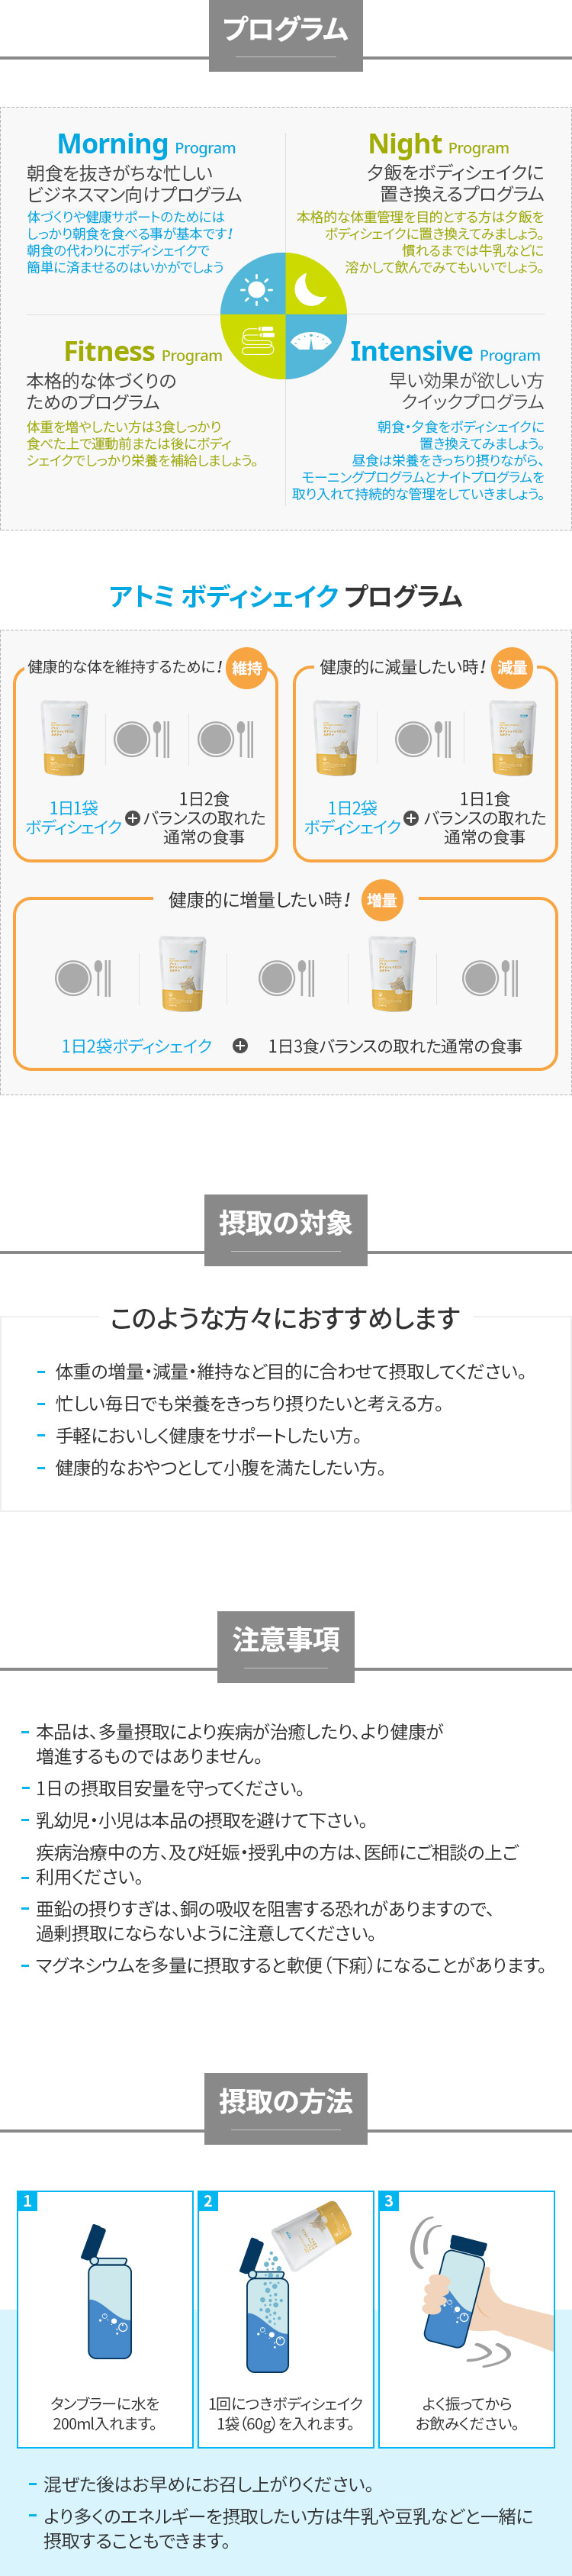 アトミ ボディシェイク 2.0 カボチャ | Atomy Japan